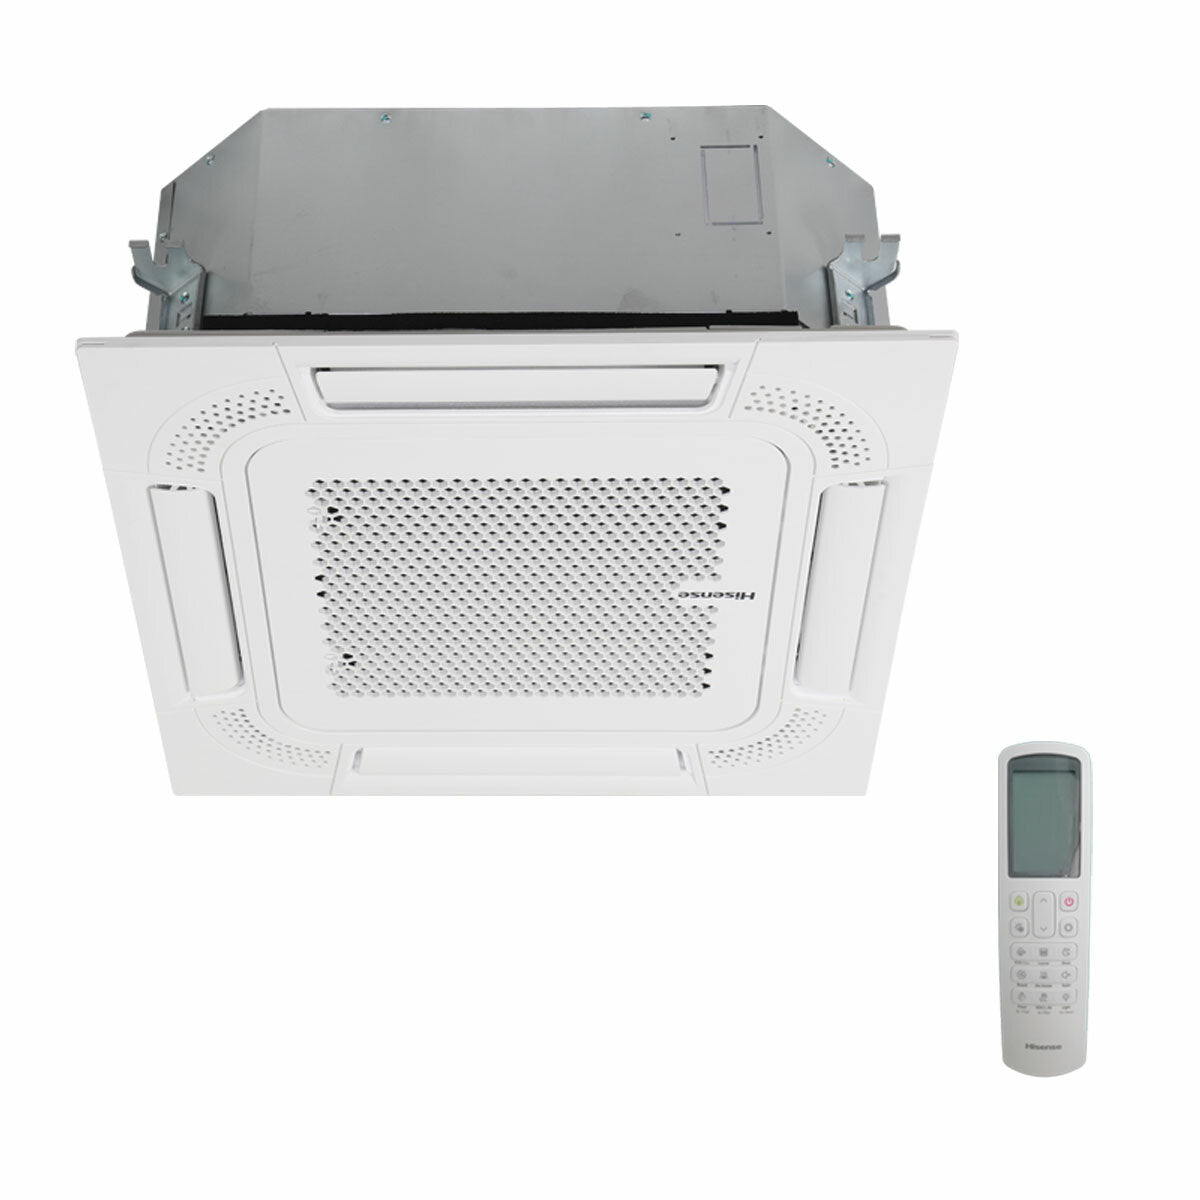 Hisense air conditioner ACT dual split cassette 9000+12000 BTU inverter A++ outdoor unit 5.5 kW